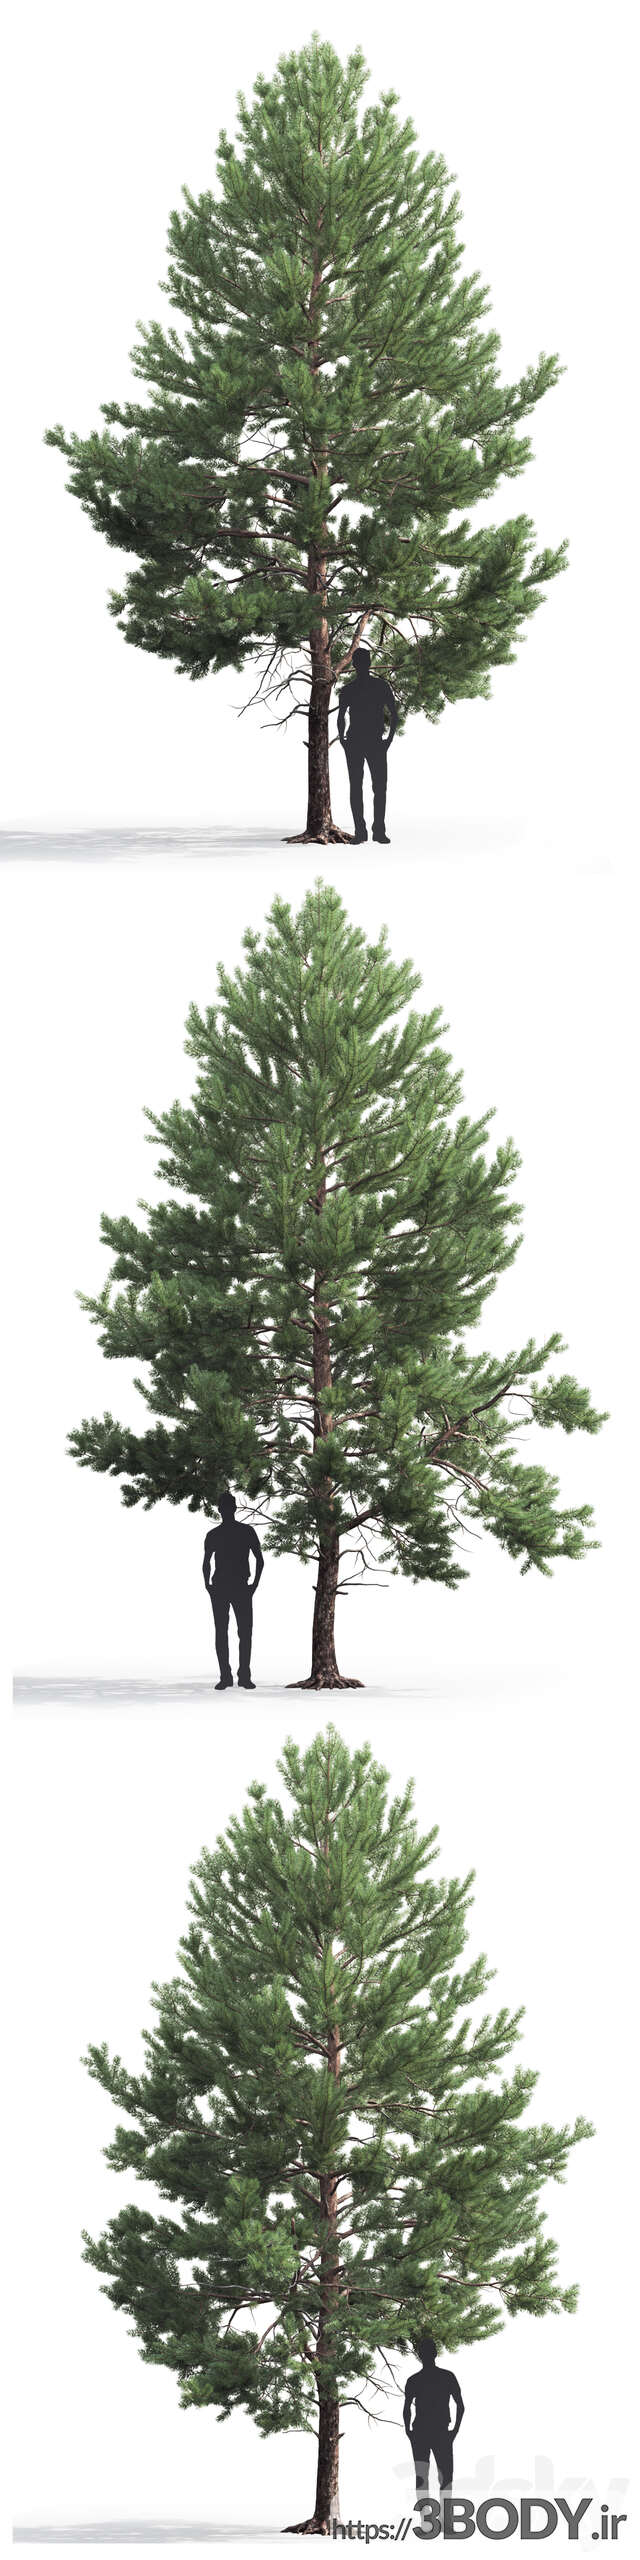 مدل سه بعدی درخت کاج عکس 3